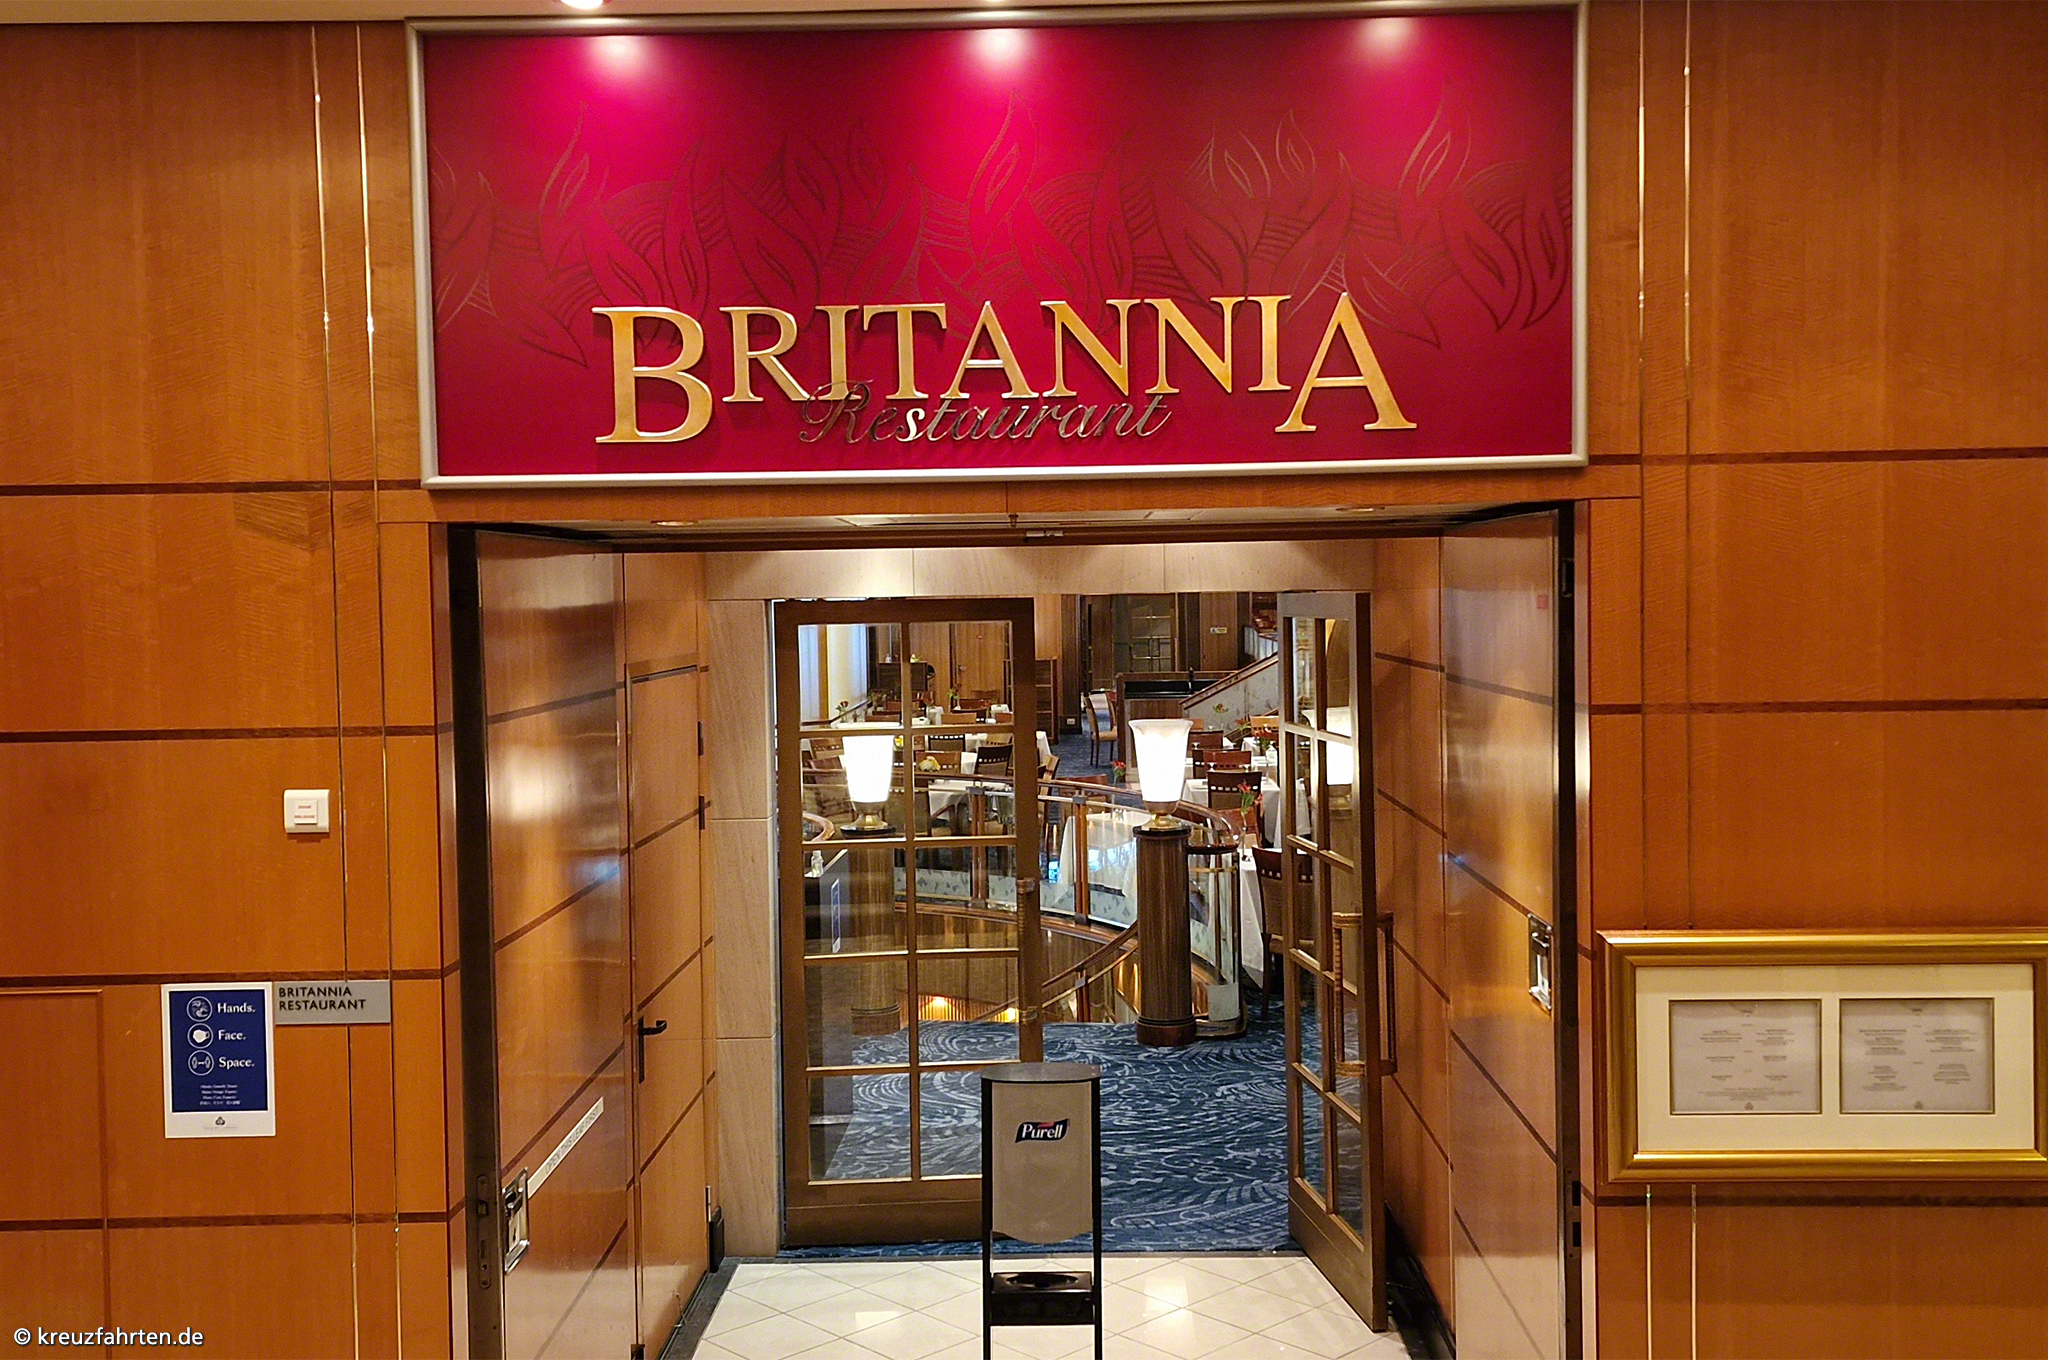 Britannia Restaurant